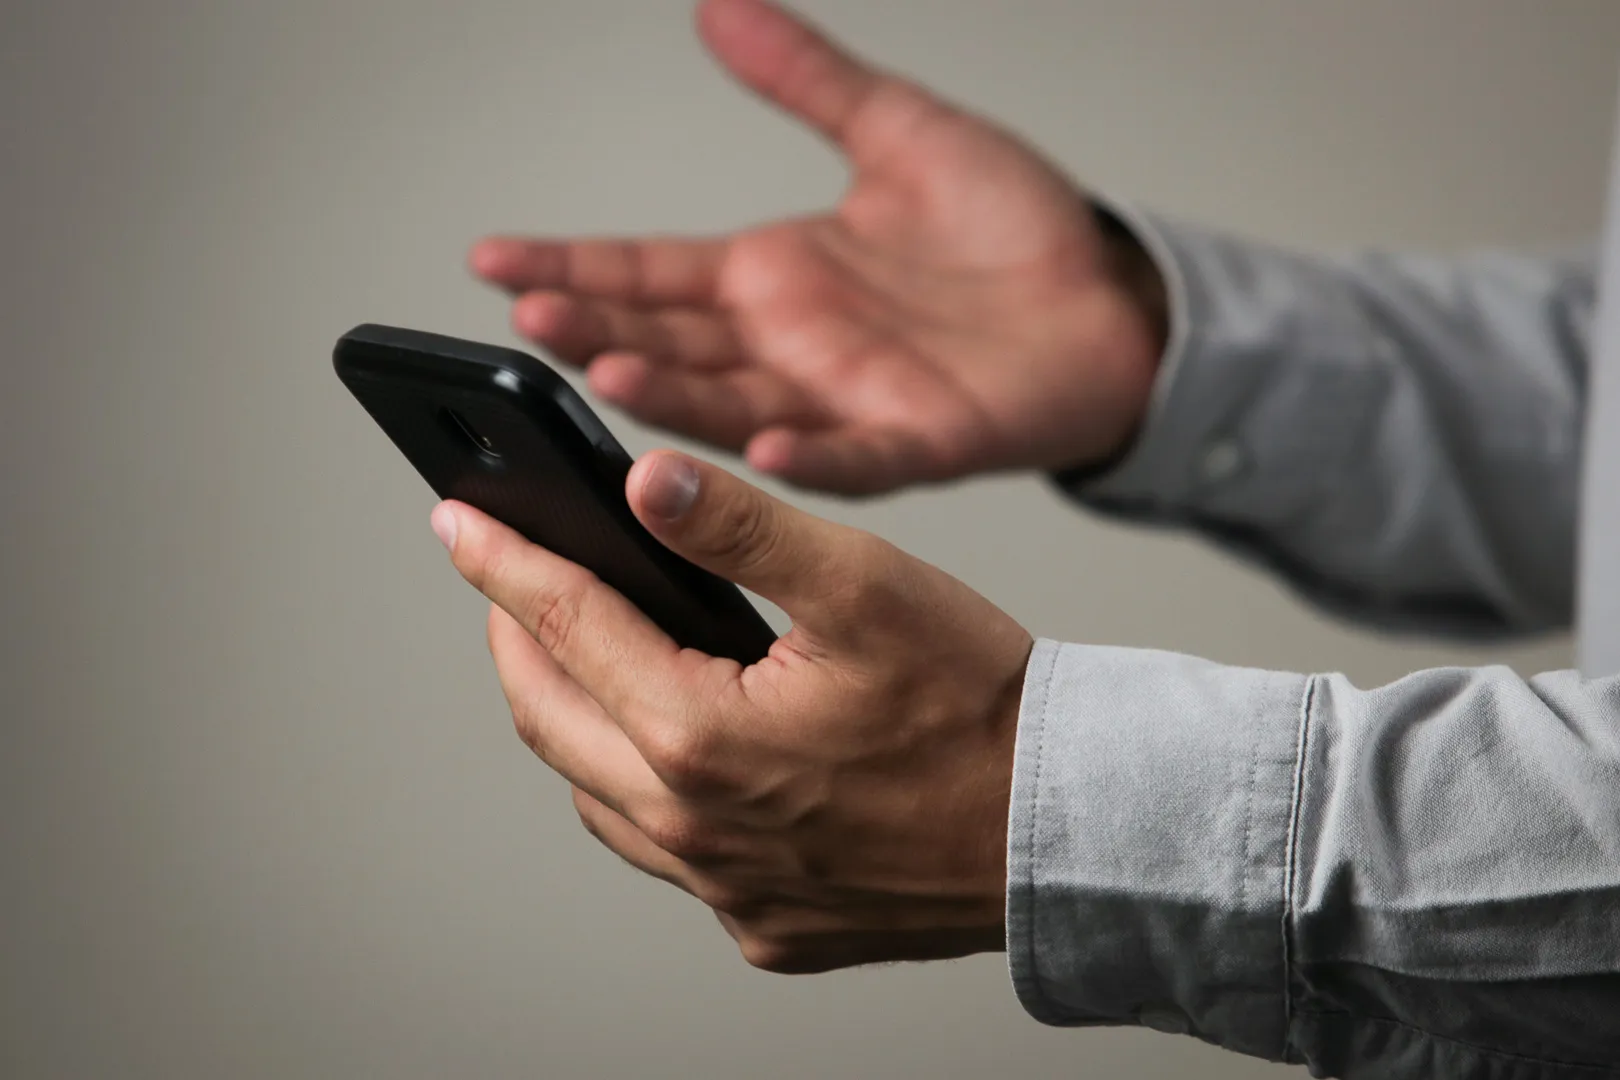 Estar 'sempre ligado' a celulares faz empregador acreditar que funcionário sempre estará disponível, diz estudo